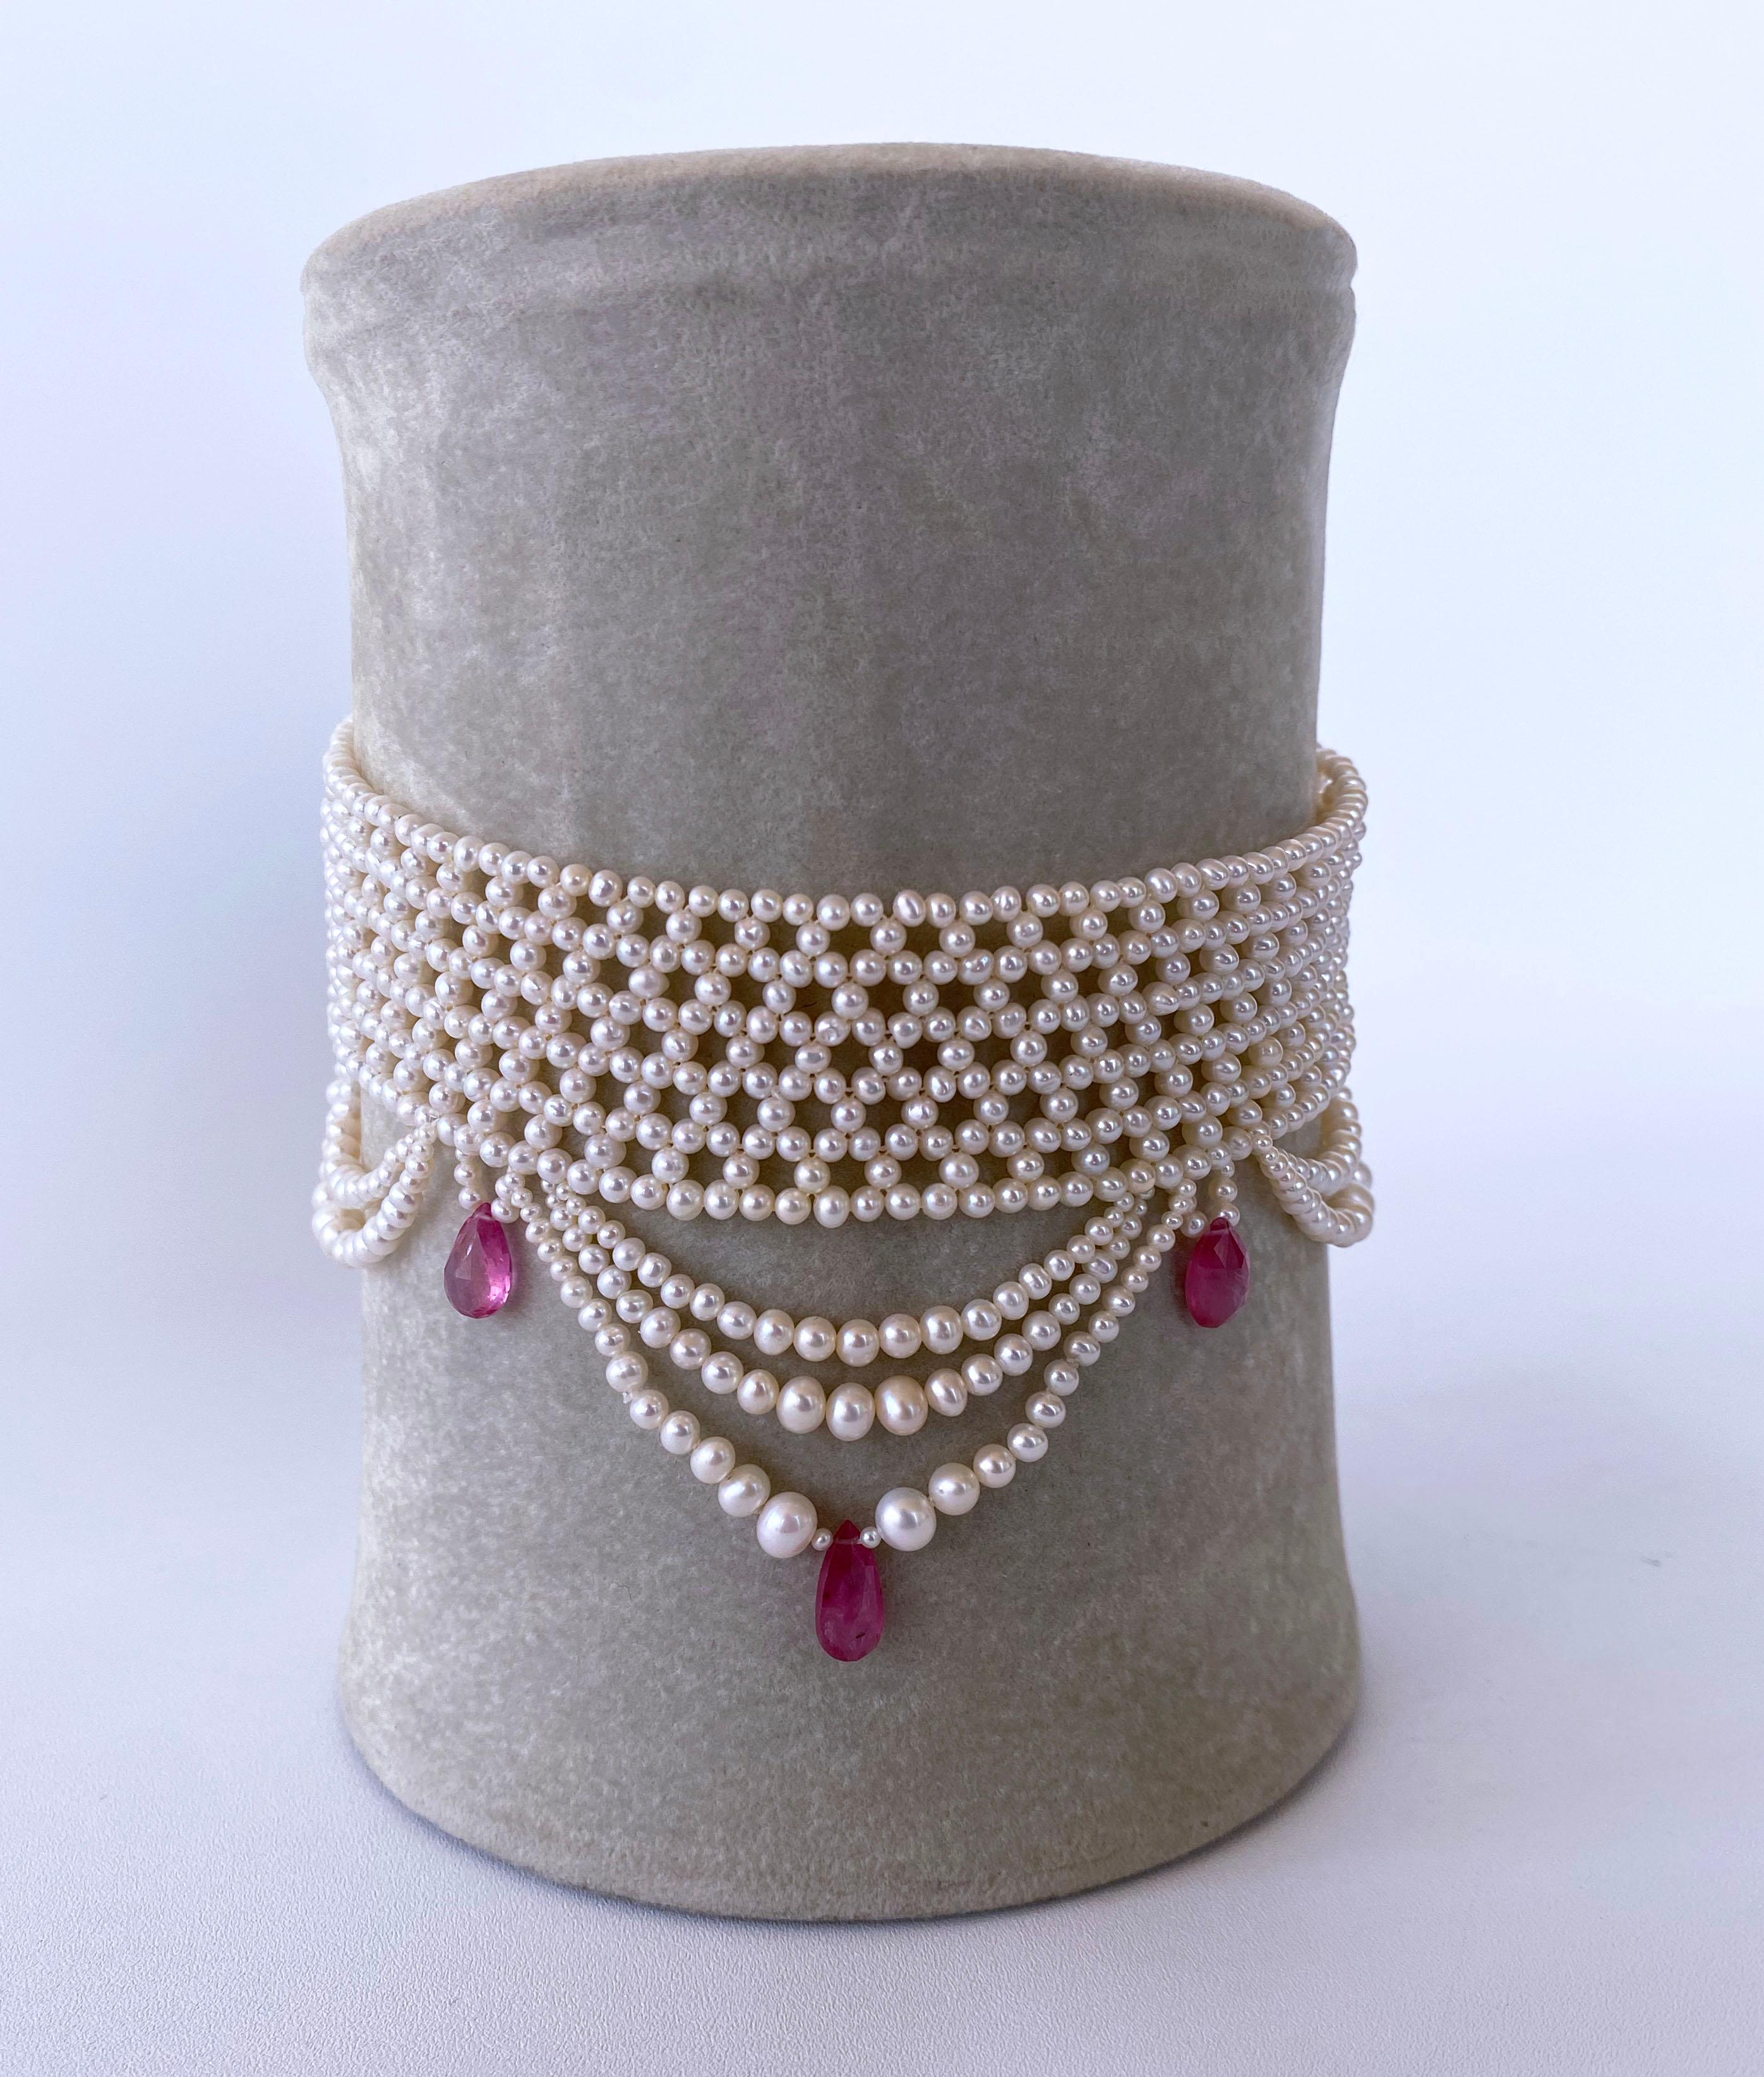 Wunderschönes Stück von Marina J. Dieses wunderschöne Halsband besteht aus hochglänzenden, cremefarbenen Perlen mit tollem Schimmer, die in aufwändiger Handarbeit zu einem engen, feinen Spitzendesign verwoben sind. An der Kette hängen wunderschöne